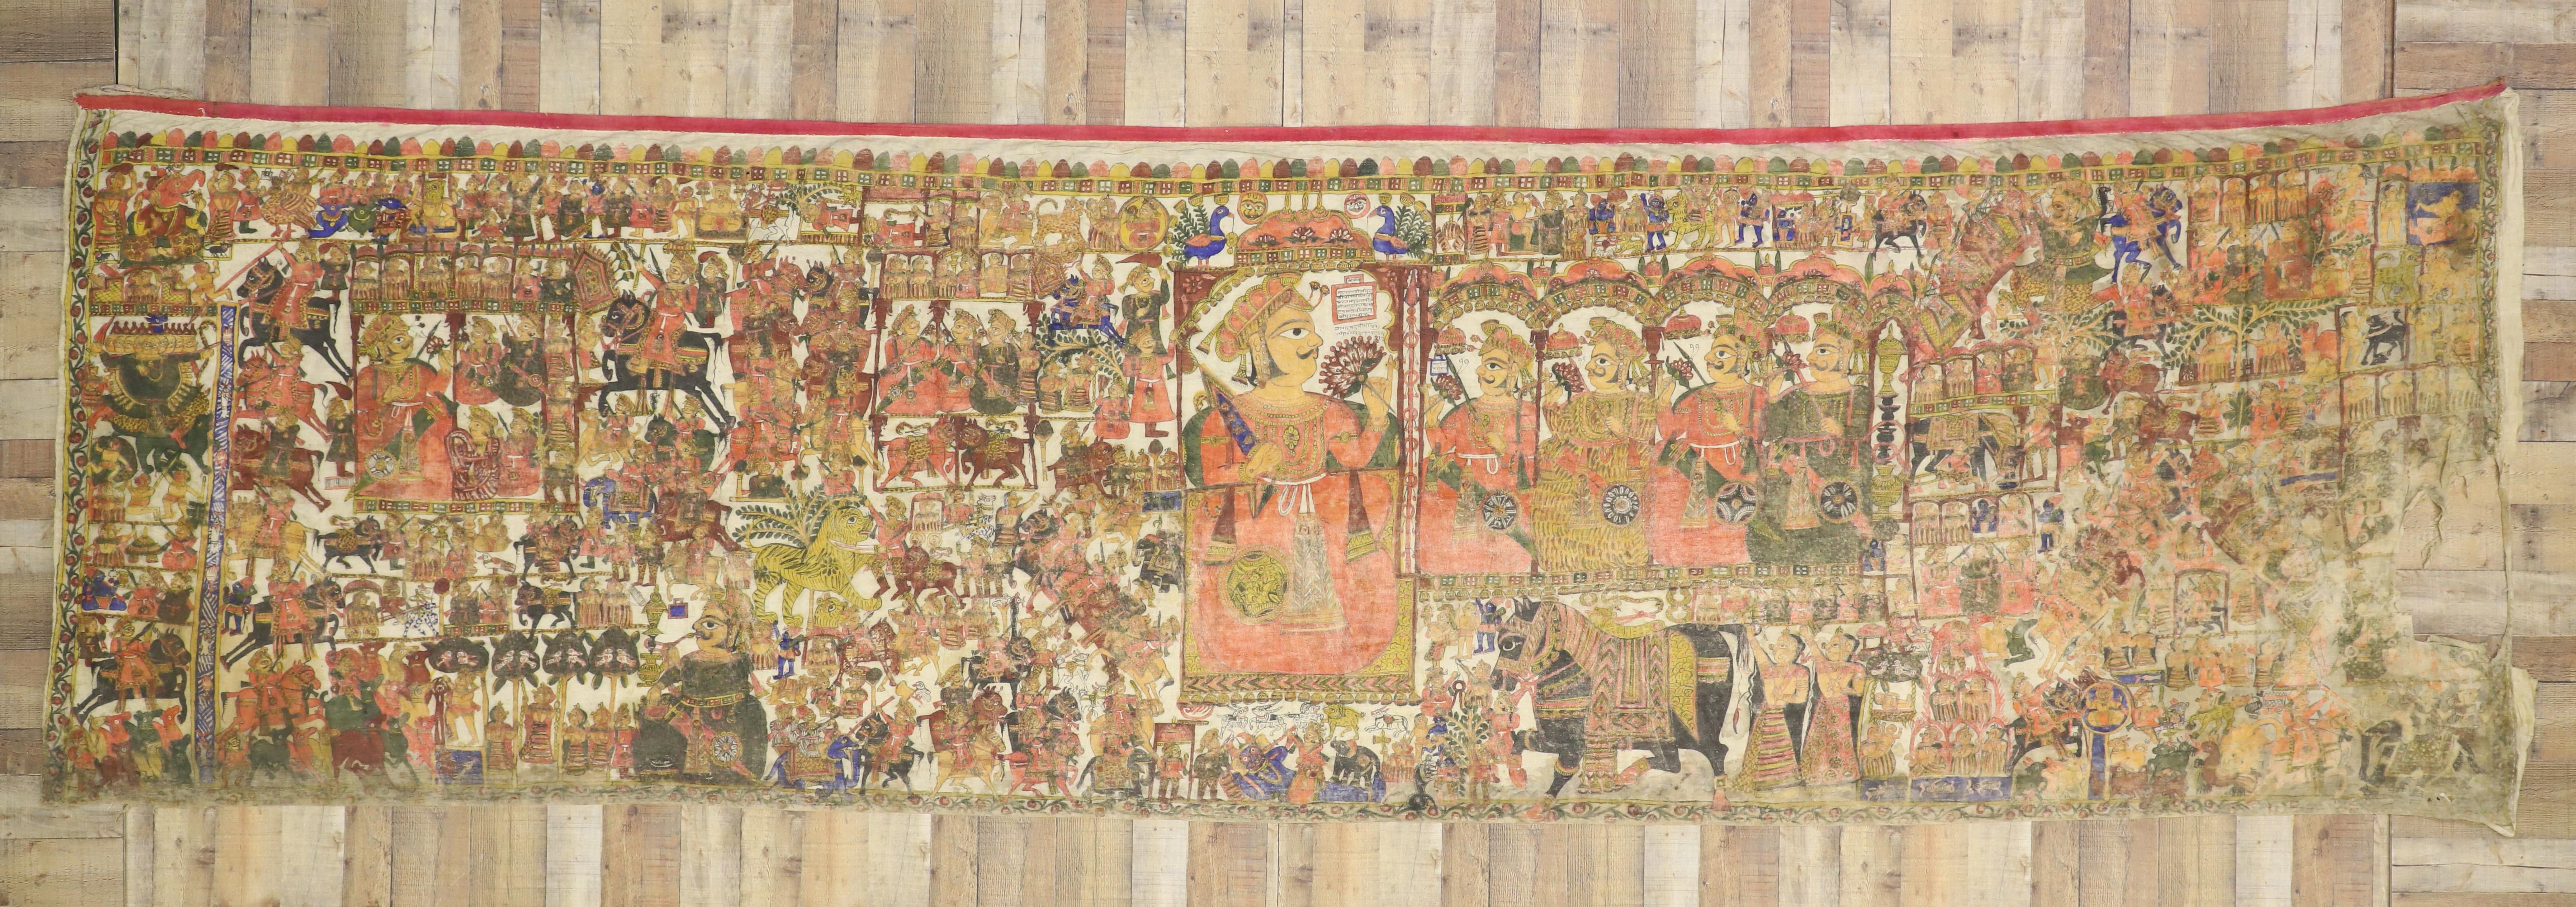 74417 Tapisserie murale médiévale indienne ancienne du XVIIIe siècle après la bataille de Karnal en 1739.  Cette magnifique tapisserie peinte indienne ancienne est réalisée sur une toile. Il présente une scène de combat de chasse avec des rois, des